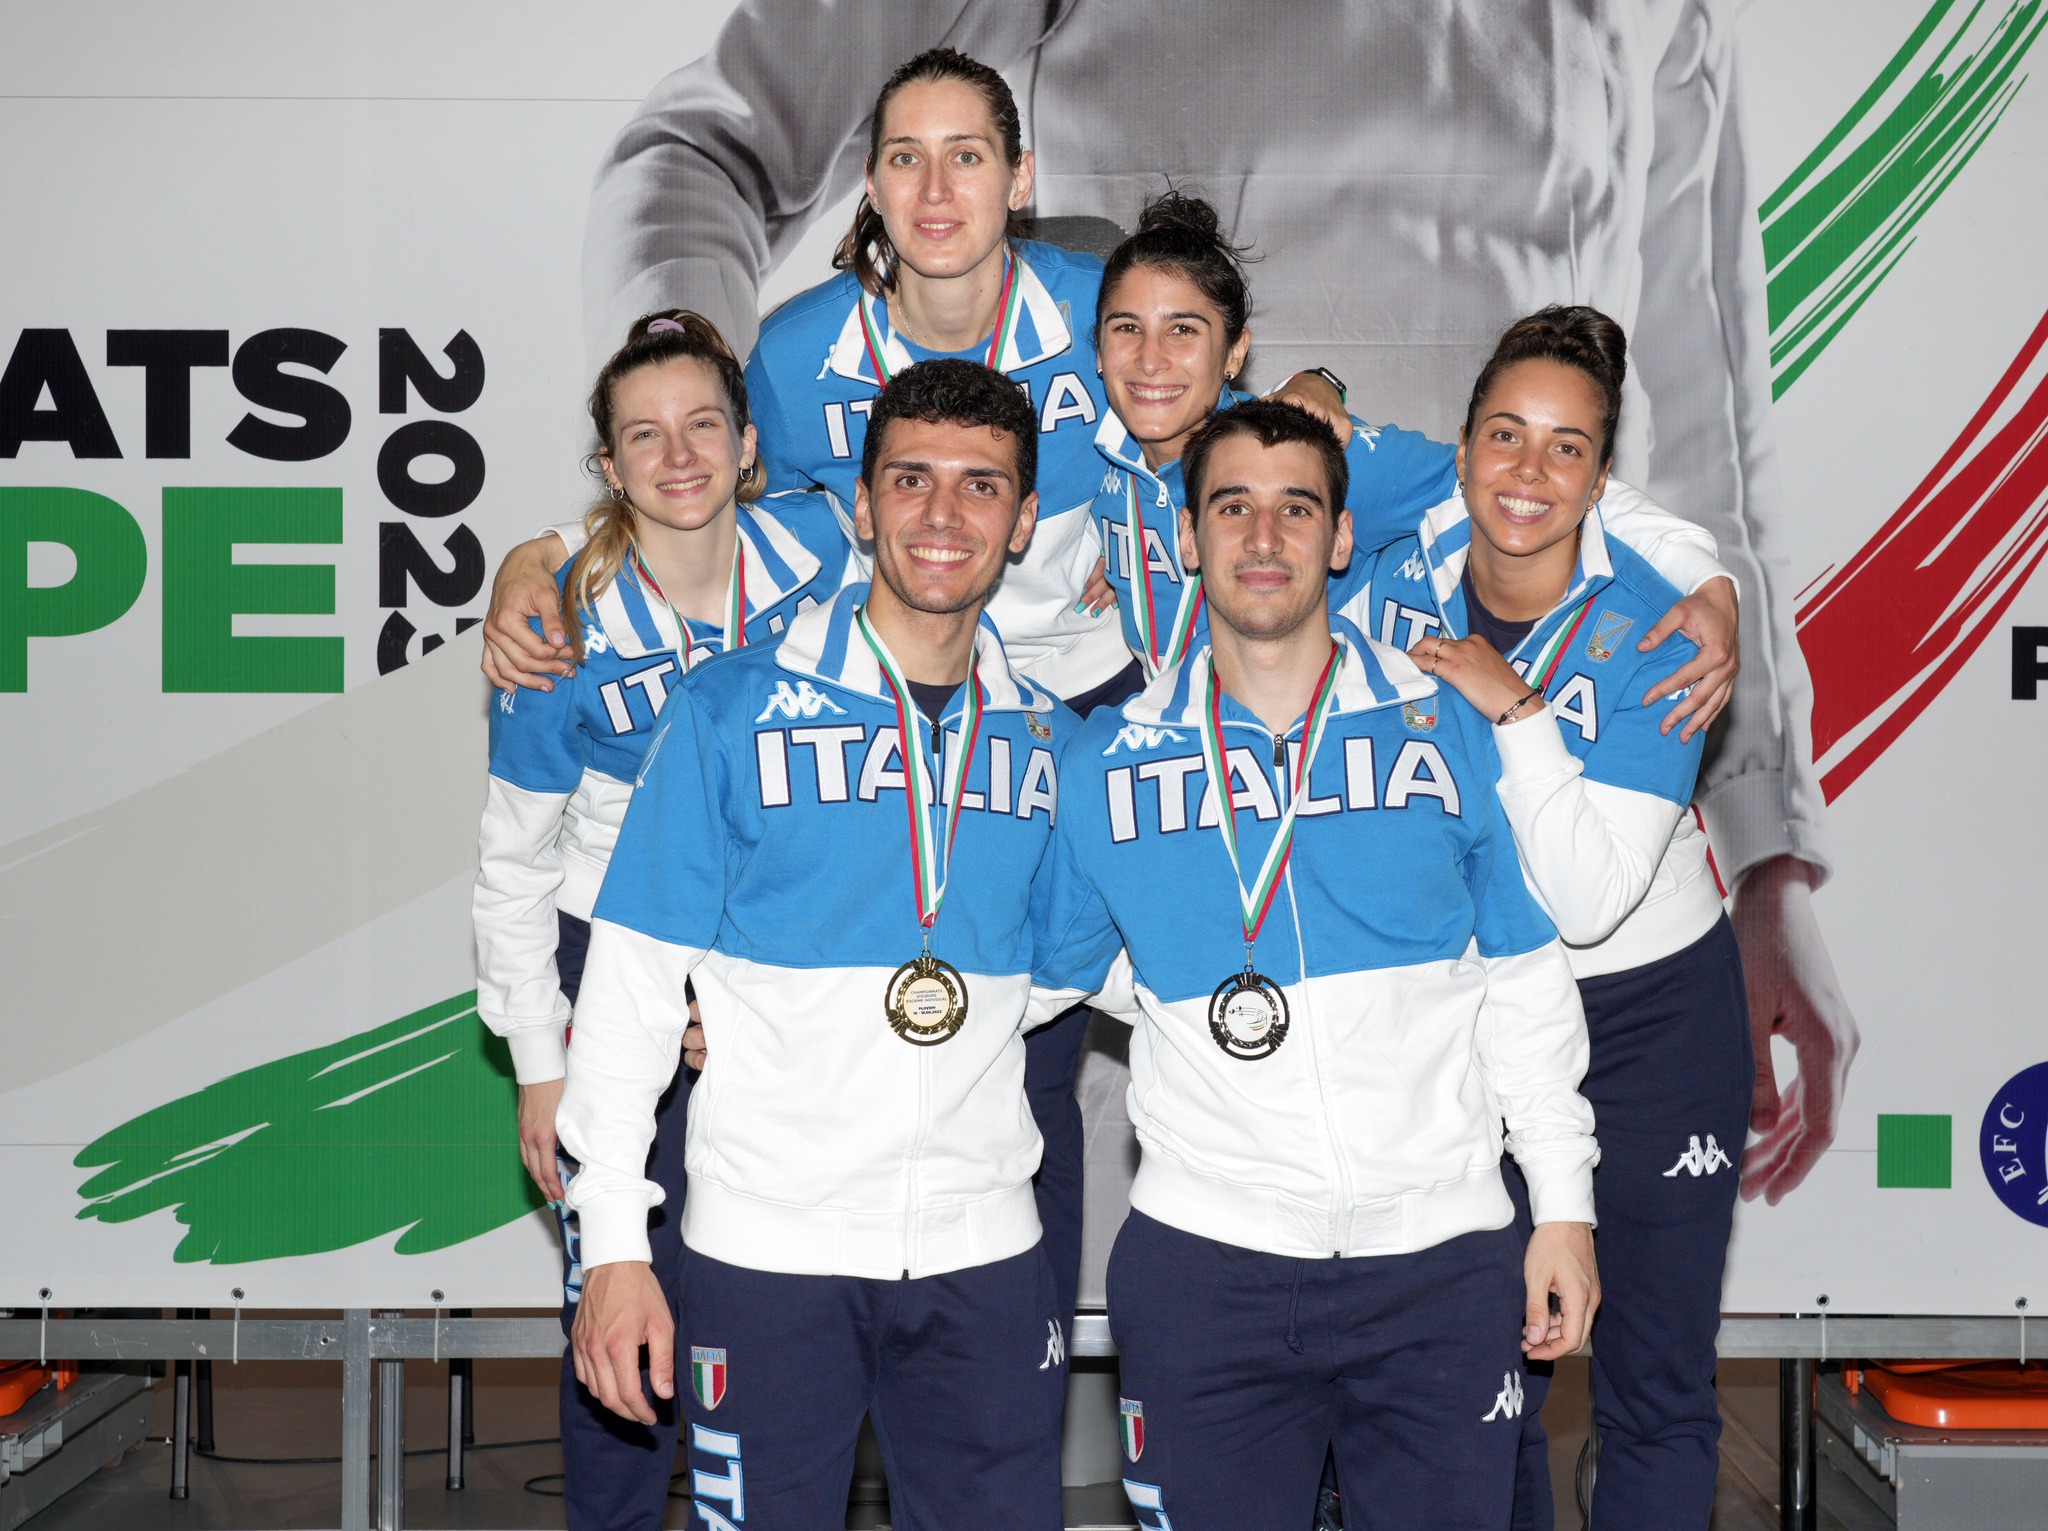 Italian Team with Federico Vismara plovdiv 2023